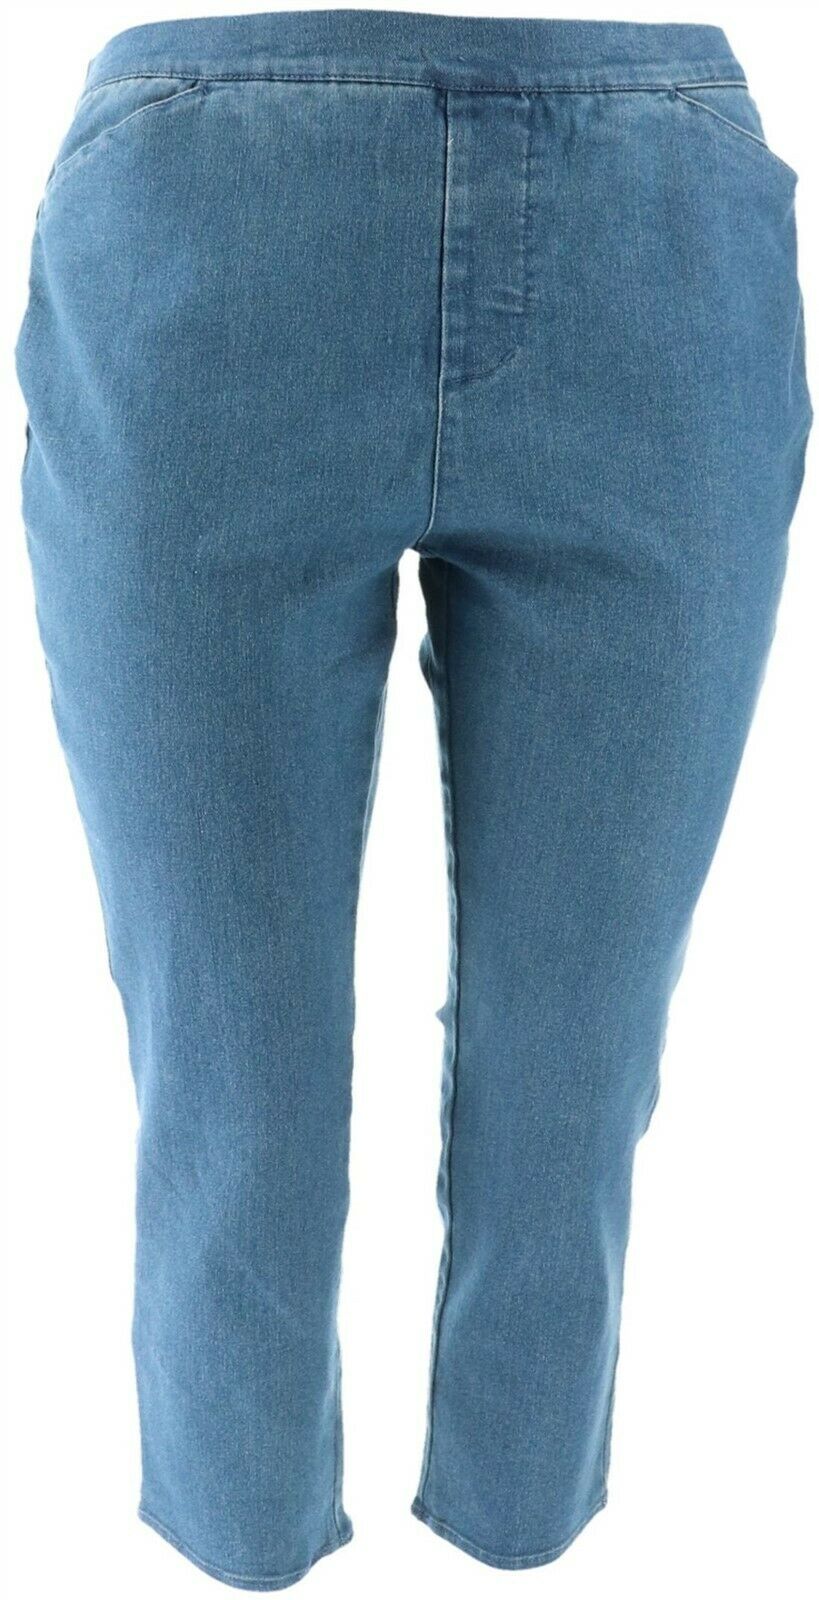 liz claiborne stretch jeans